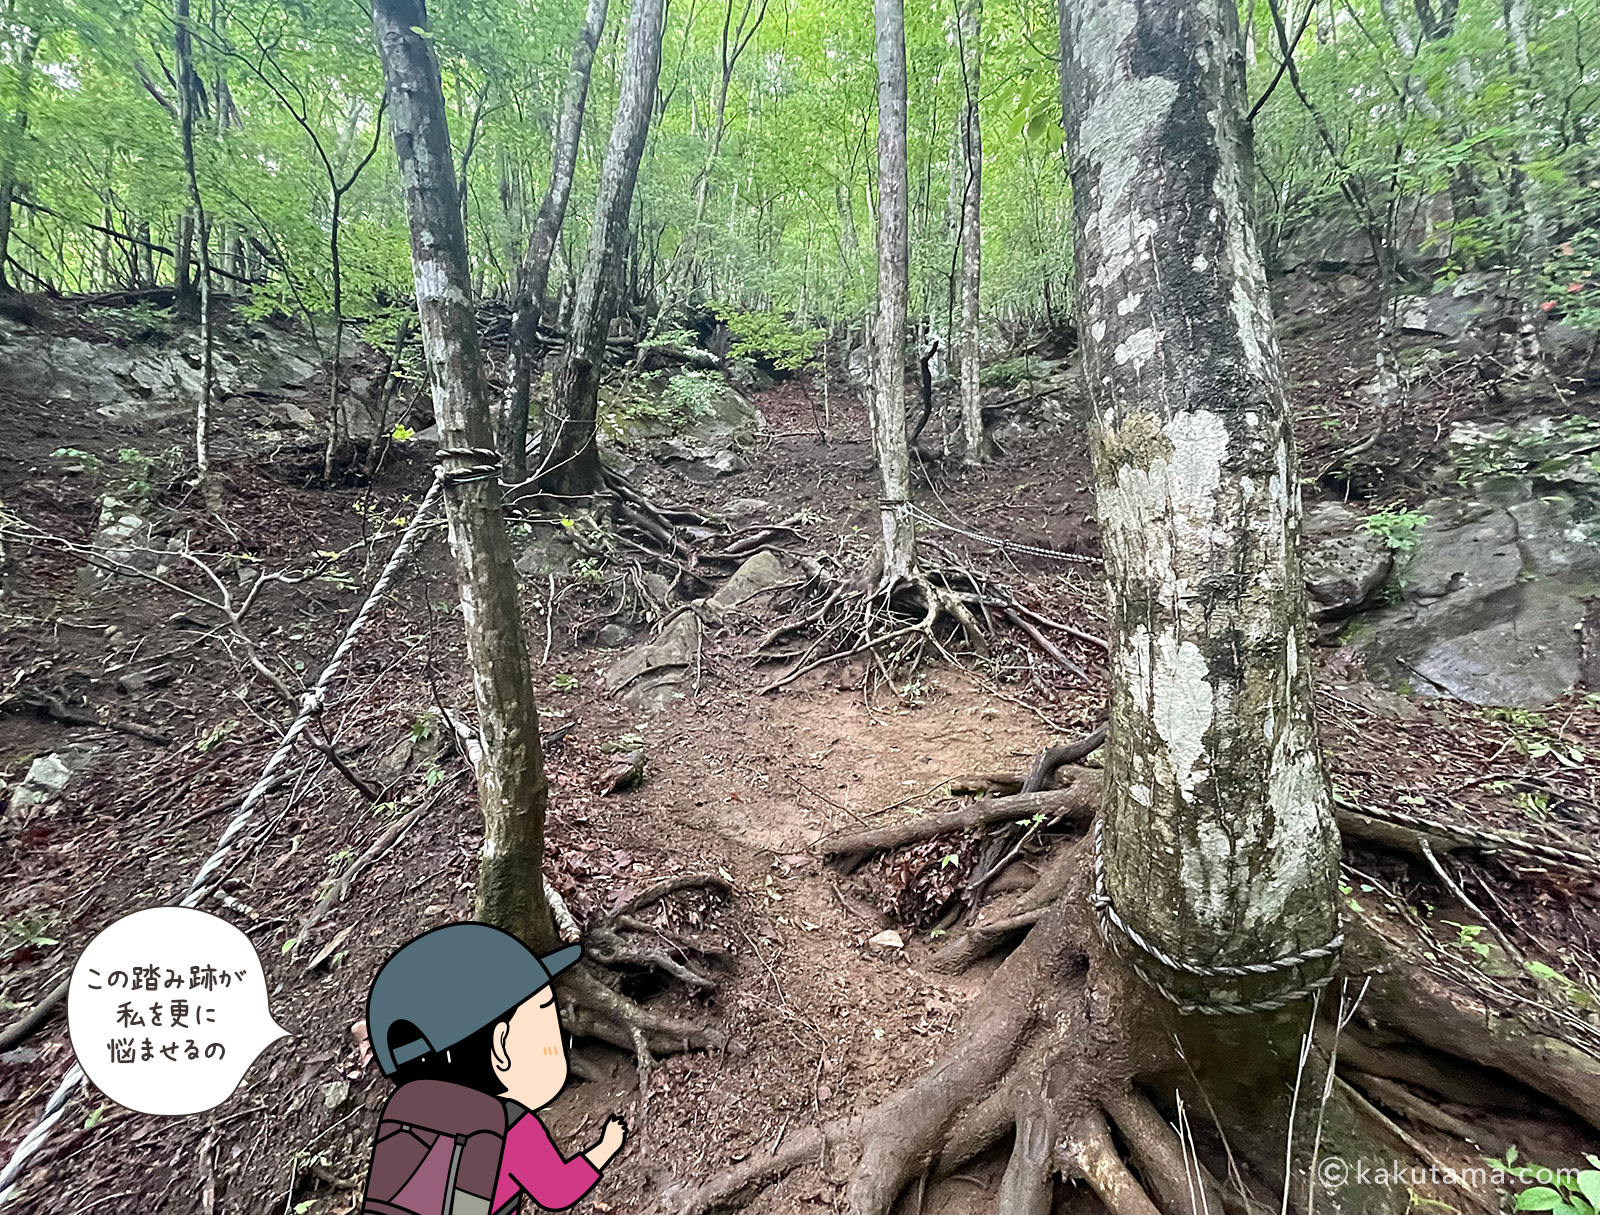 滝子山スミ沢ルートの難所ルートの樹林帯の写真と登山者のイラスト